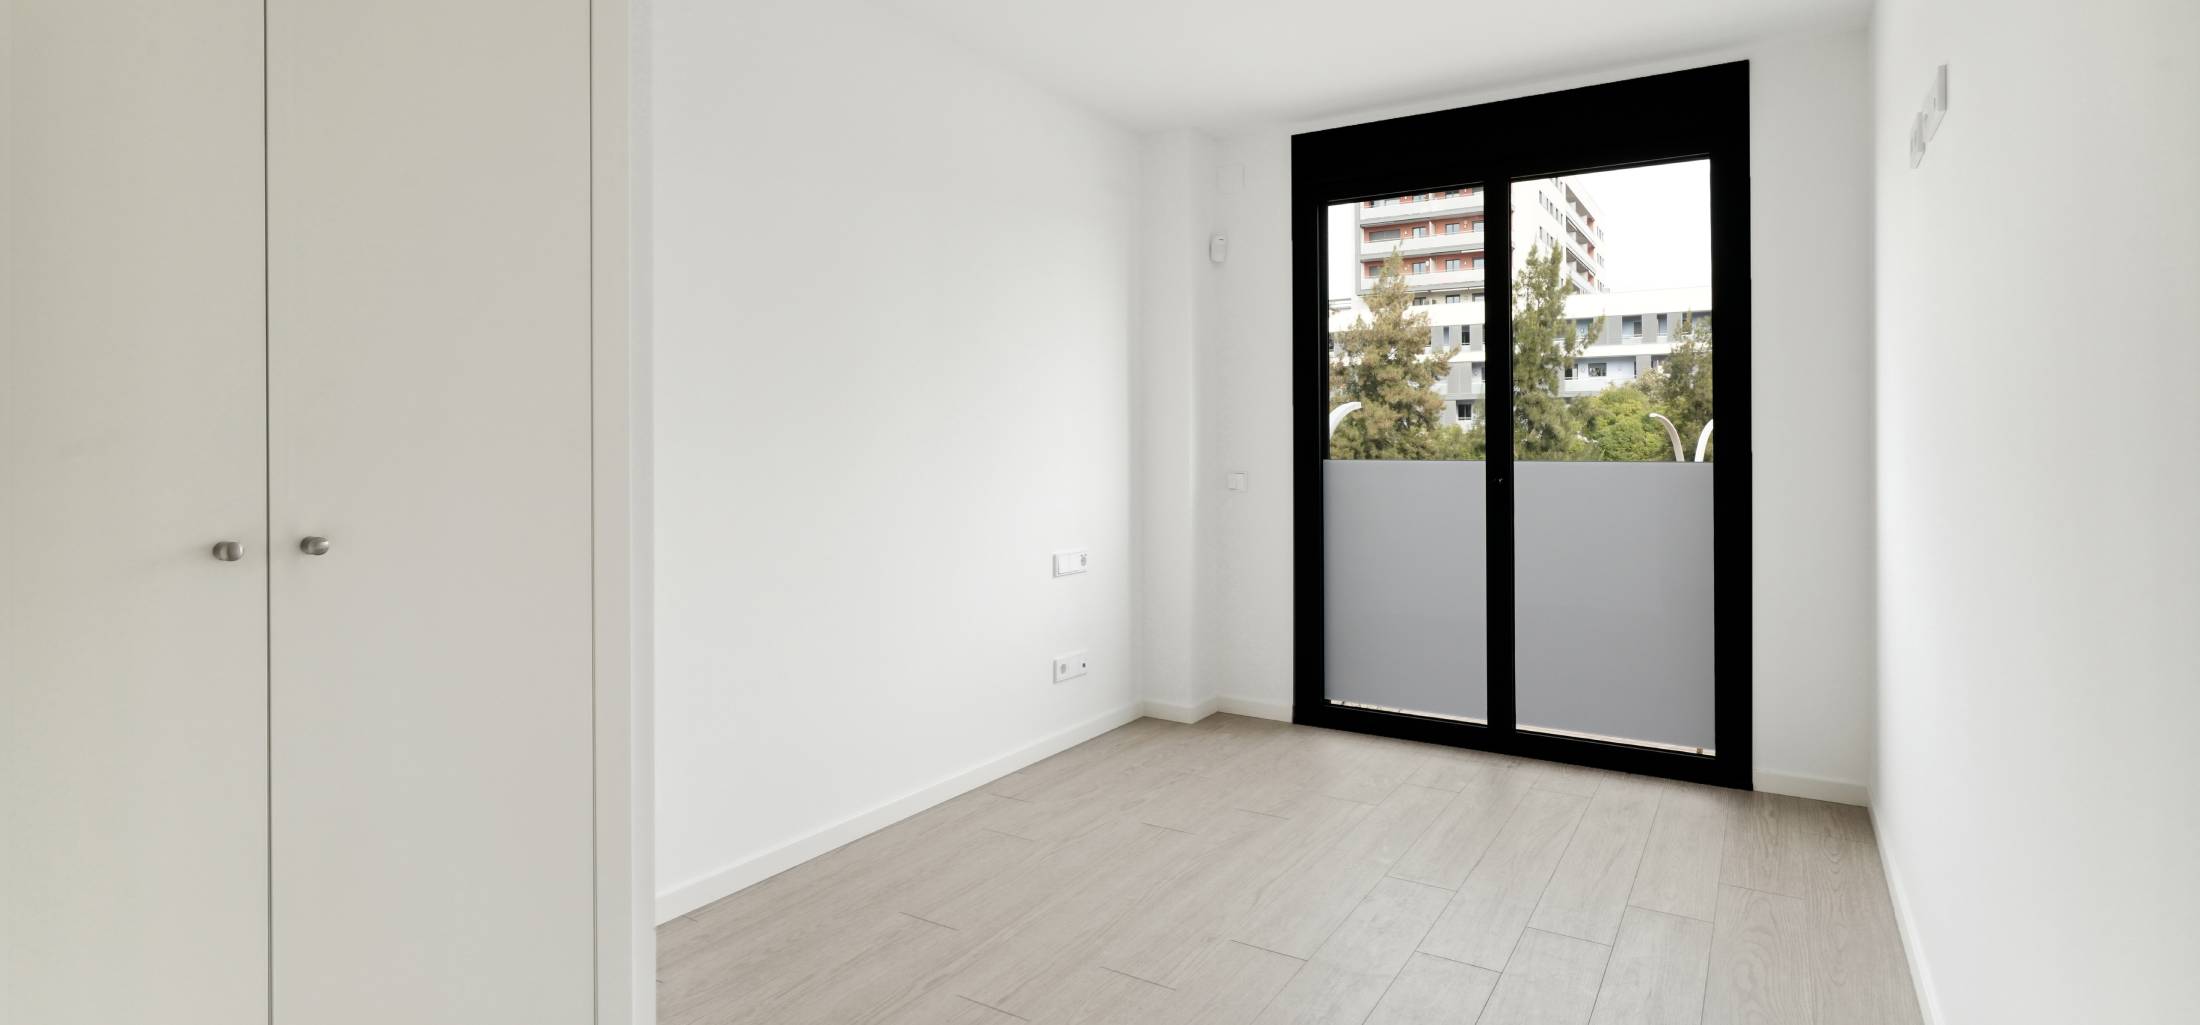 pages/flats/marobert-badalona.image_seo.floor_2_portal_C_door_4_5